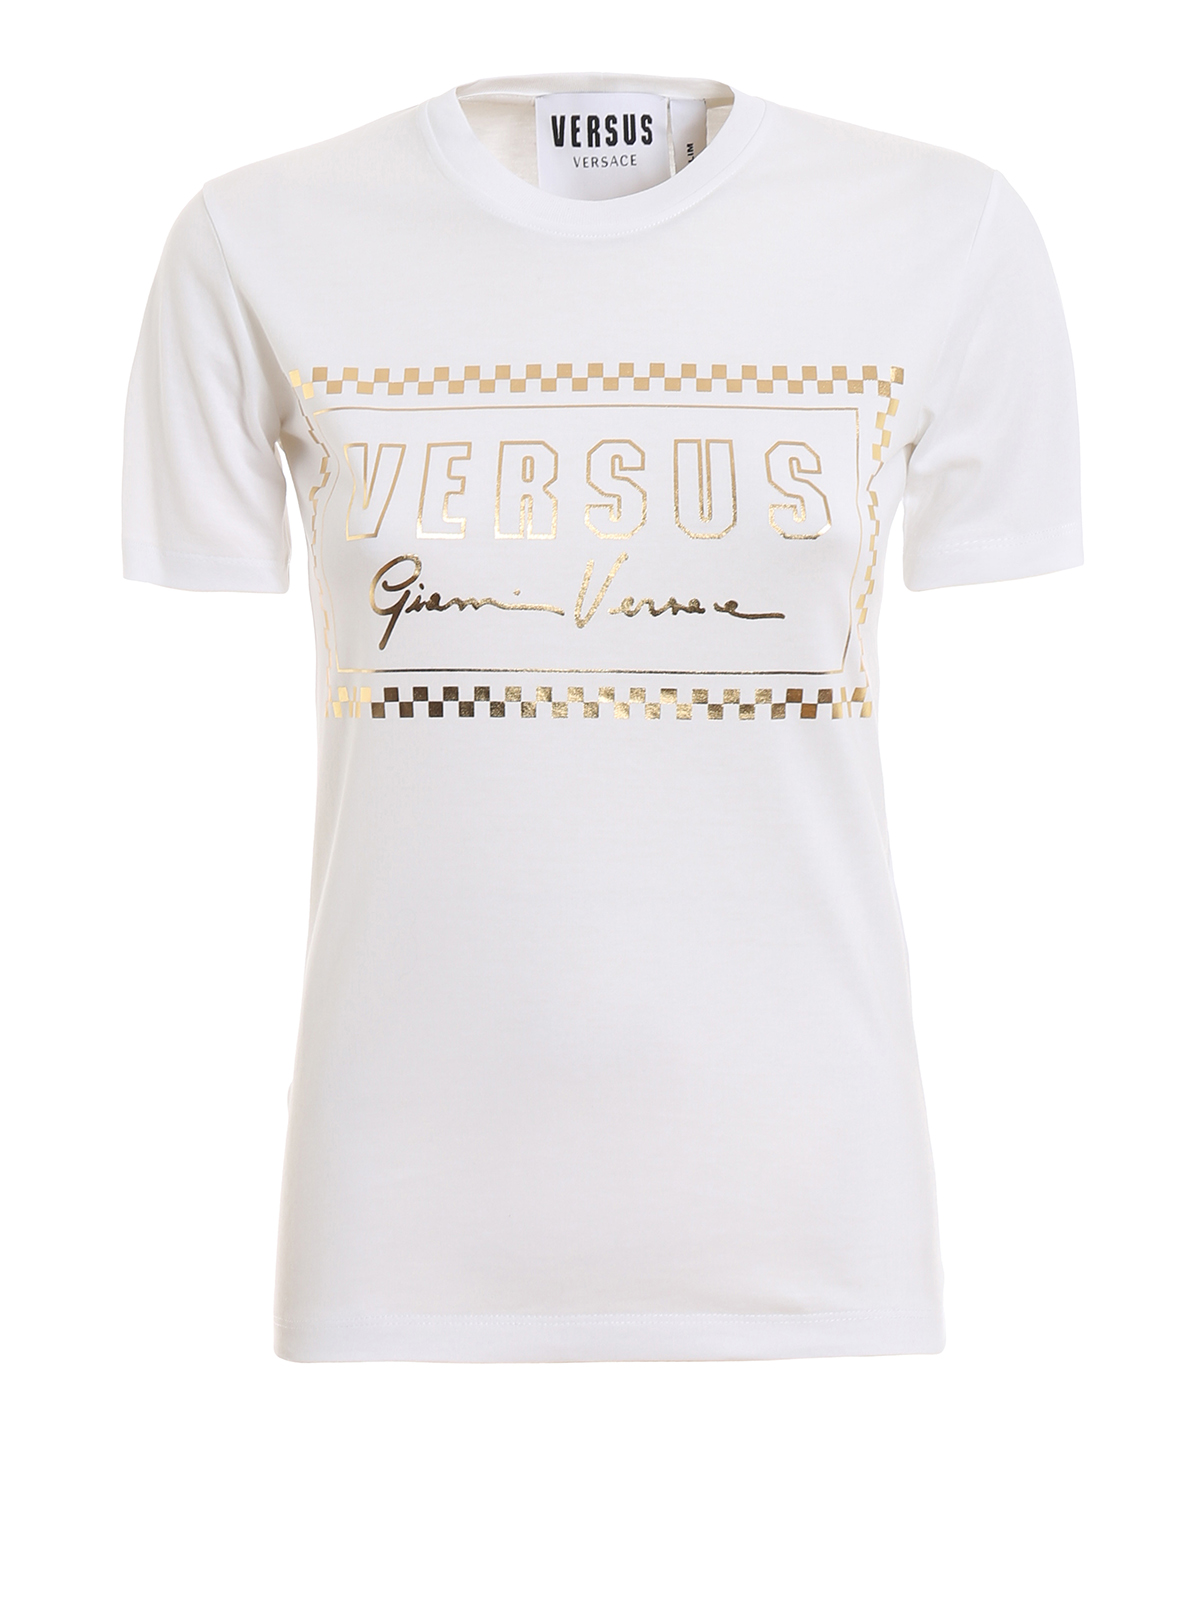 Versus Versace - T-Shirt - Versus 